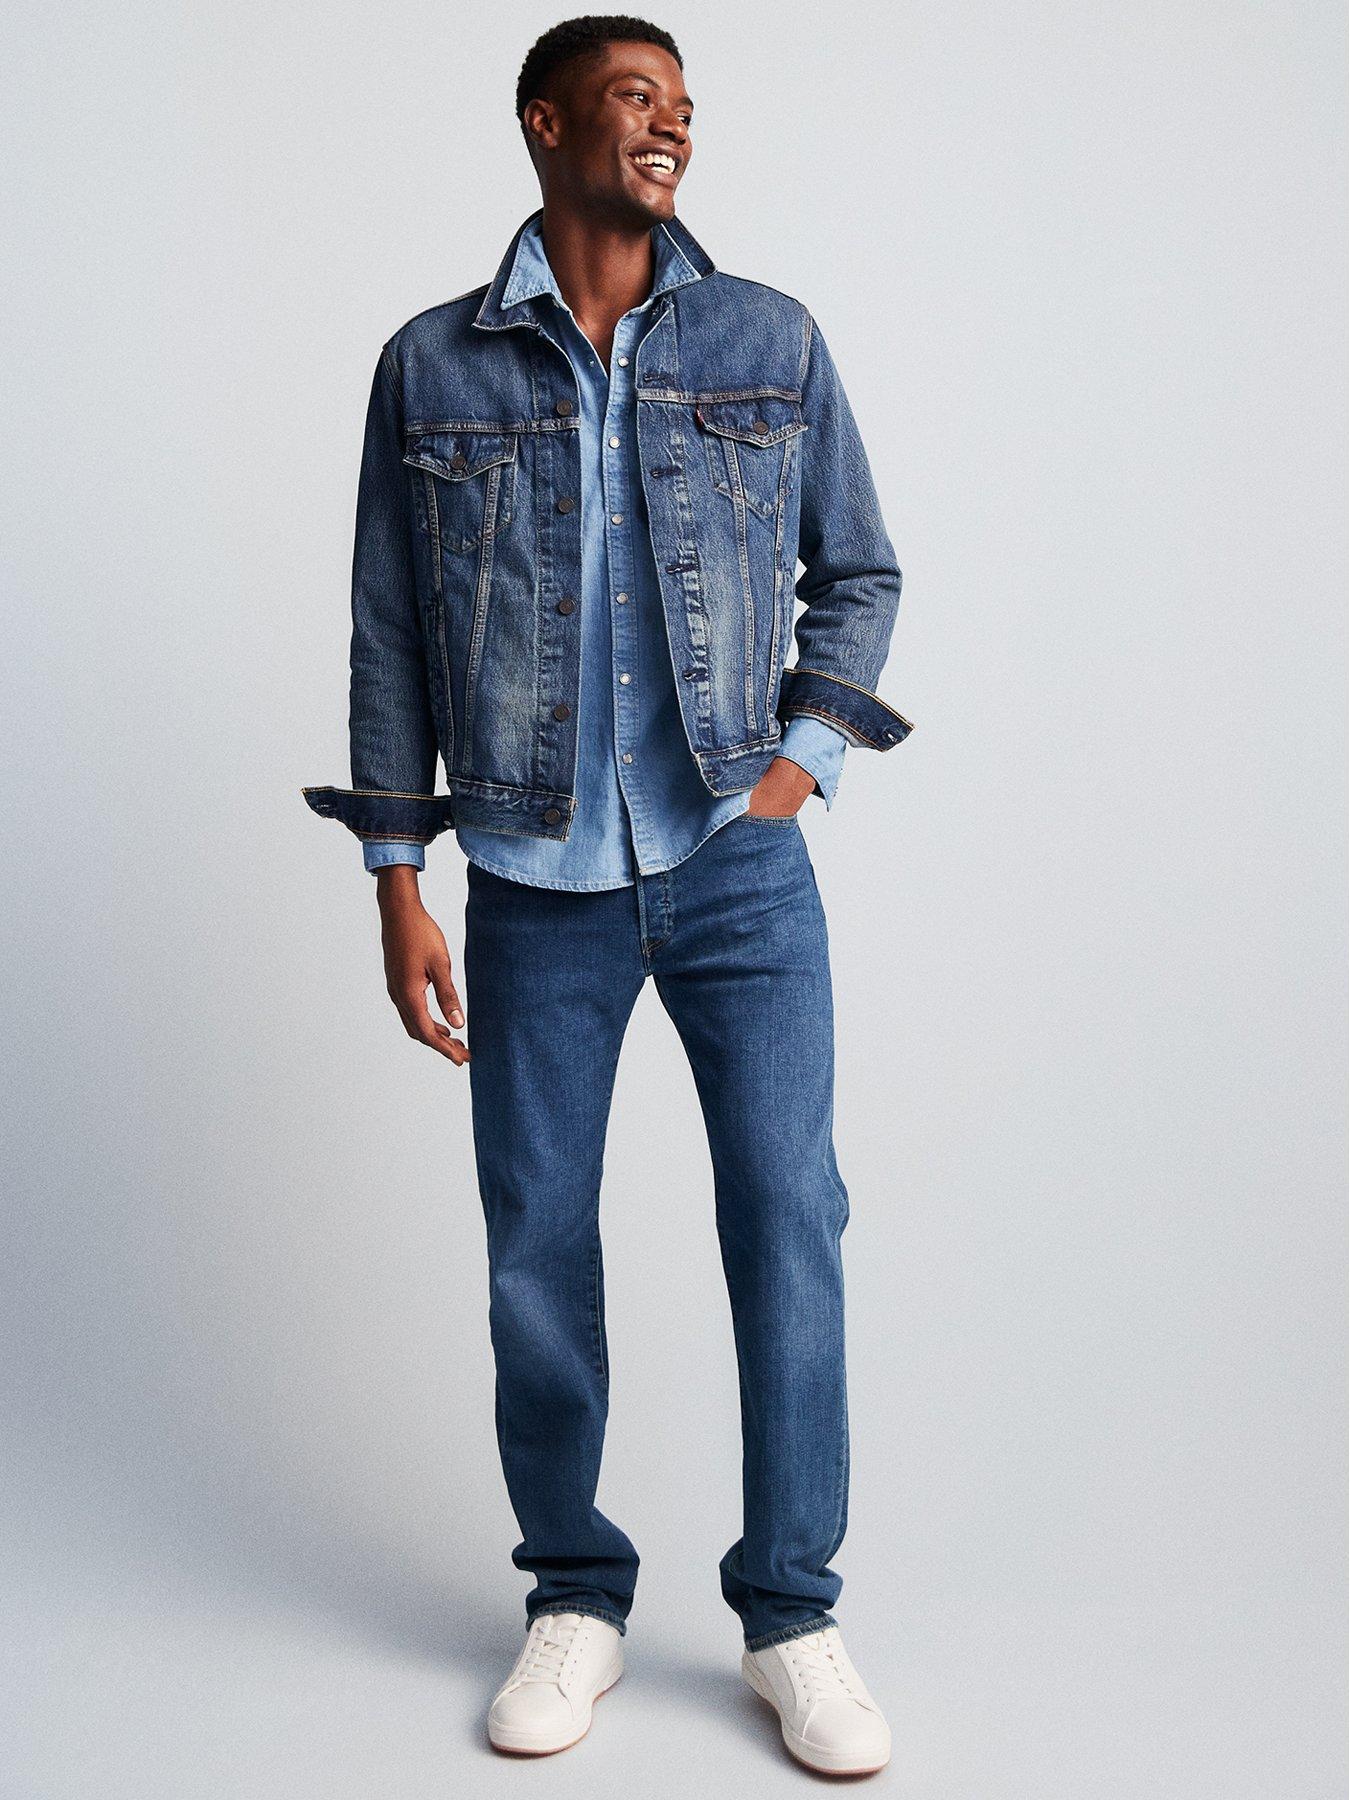 Levis Jeans for Men | Levi Jeans 